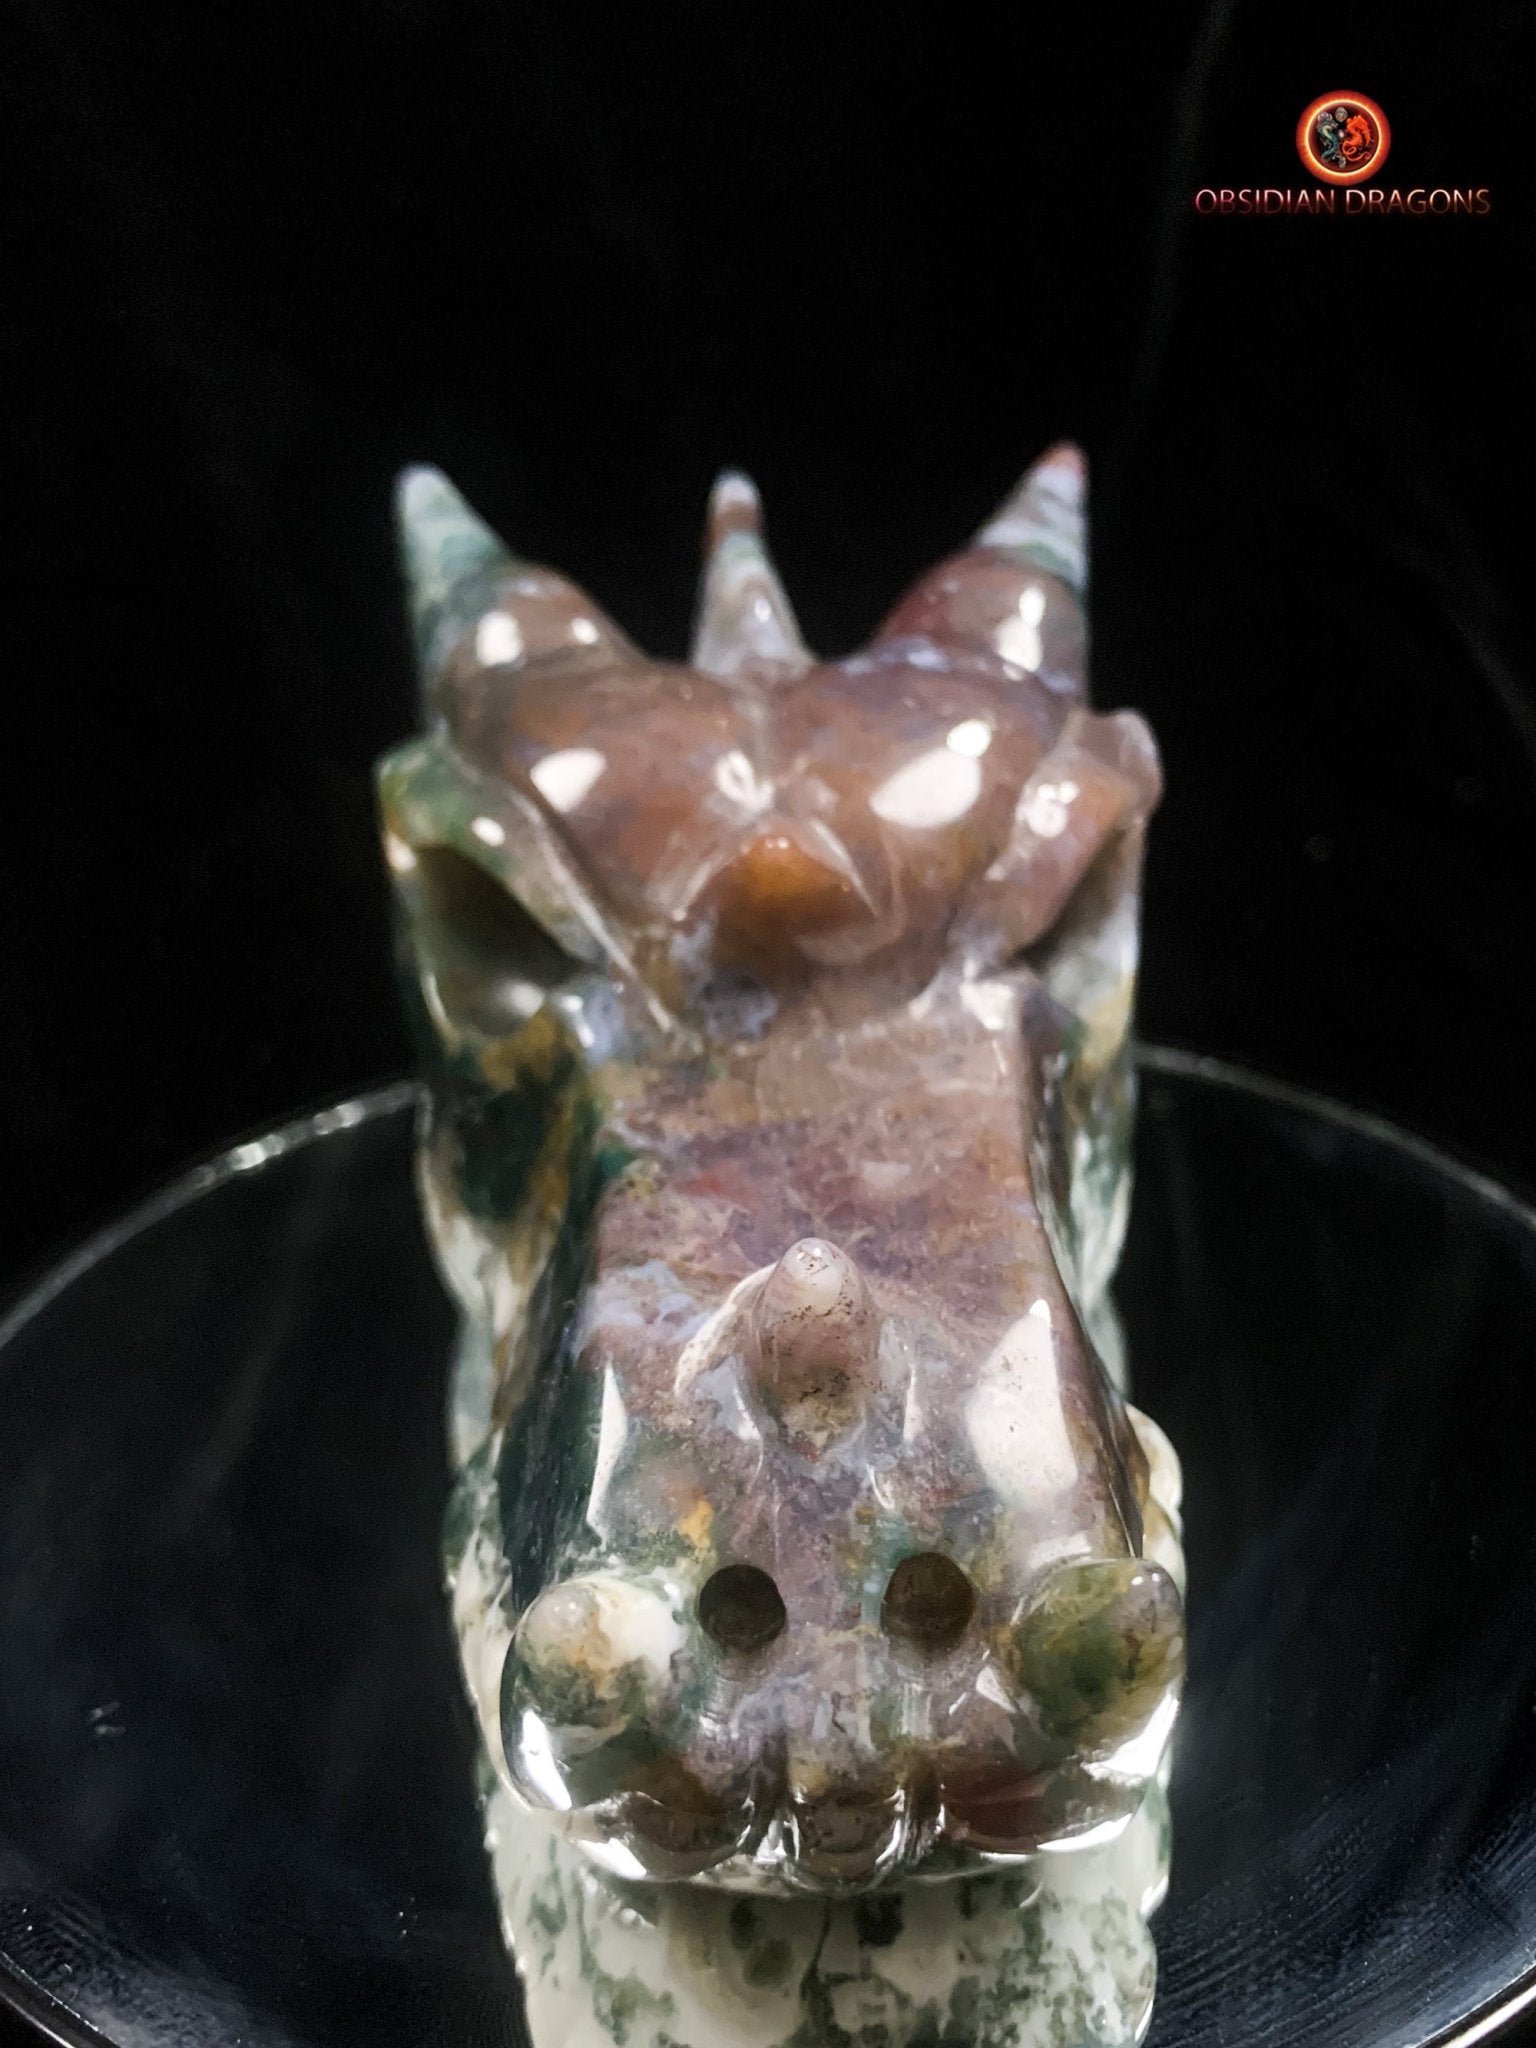 Grand crâne de dragon- Agate mousse d'indonésie | obsidian dragons